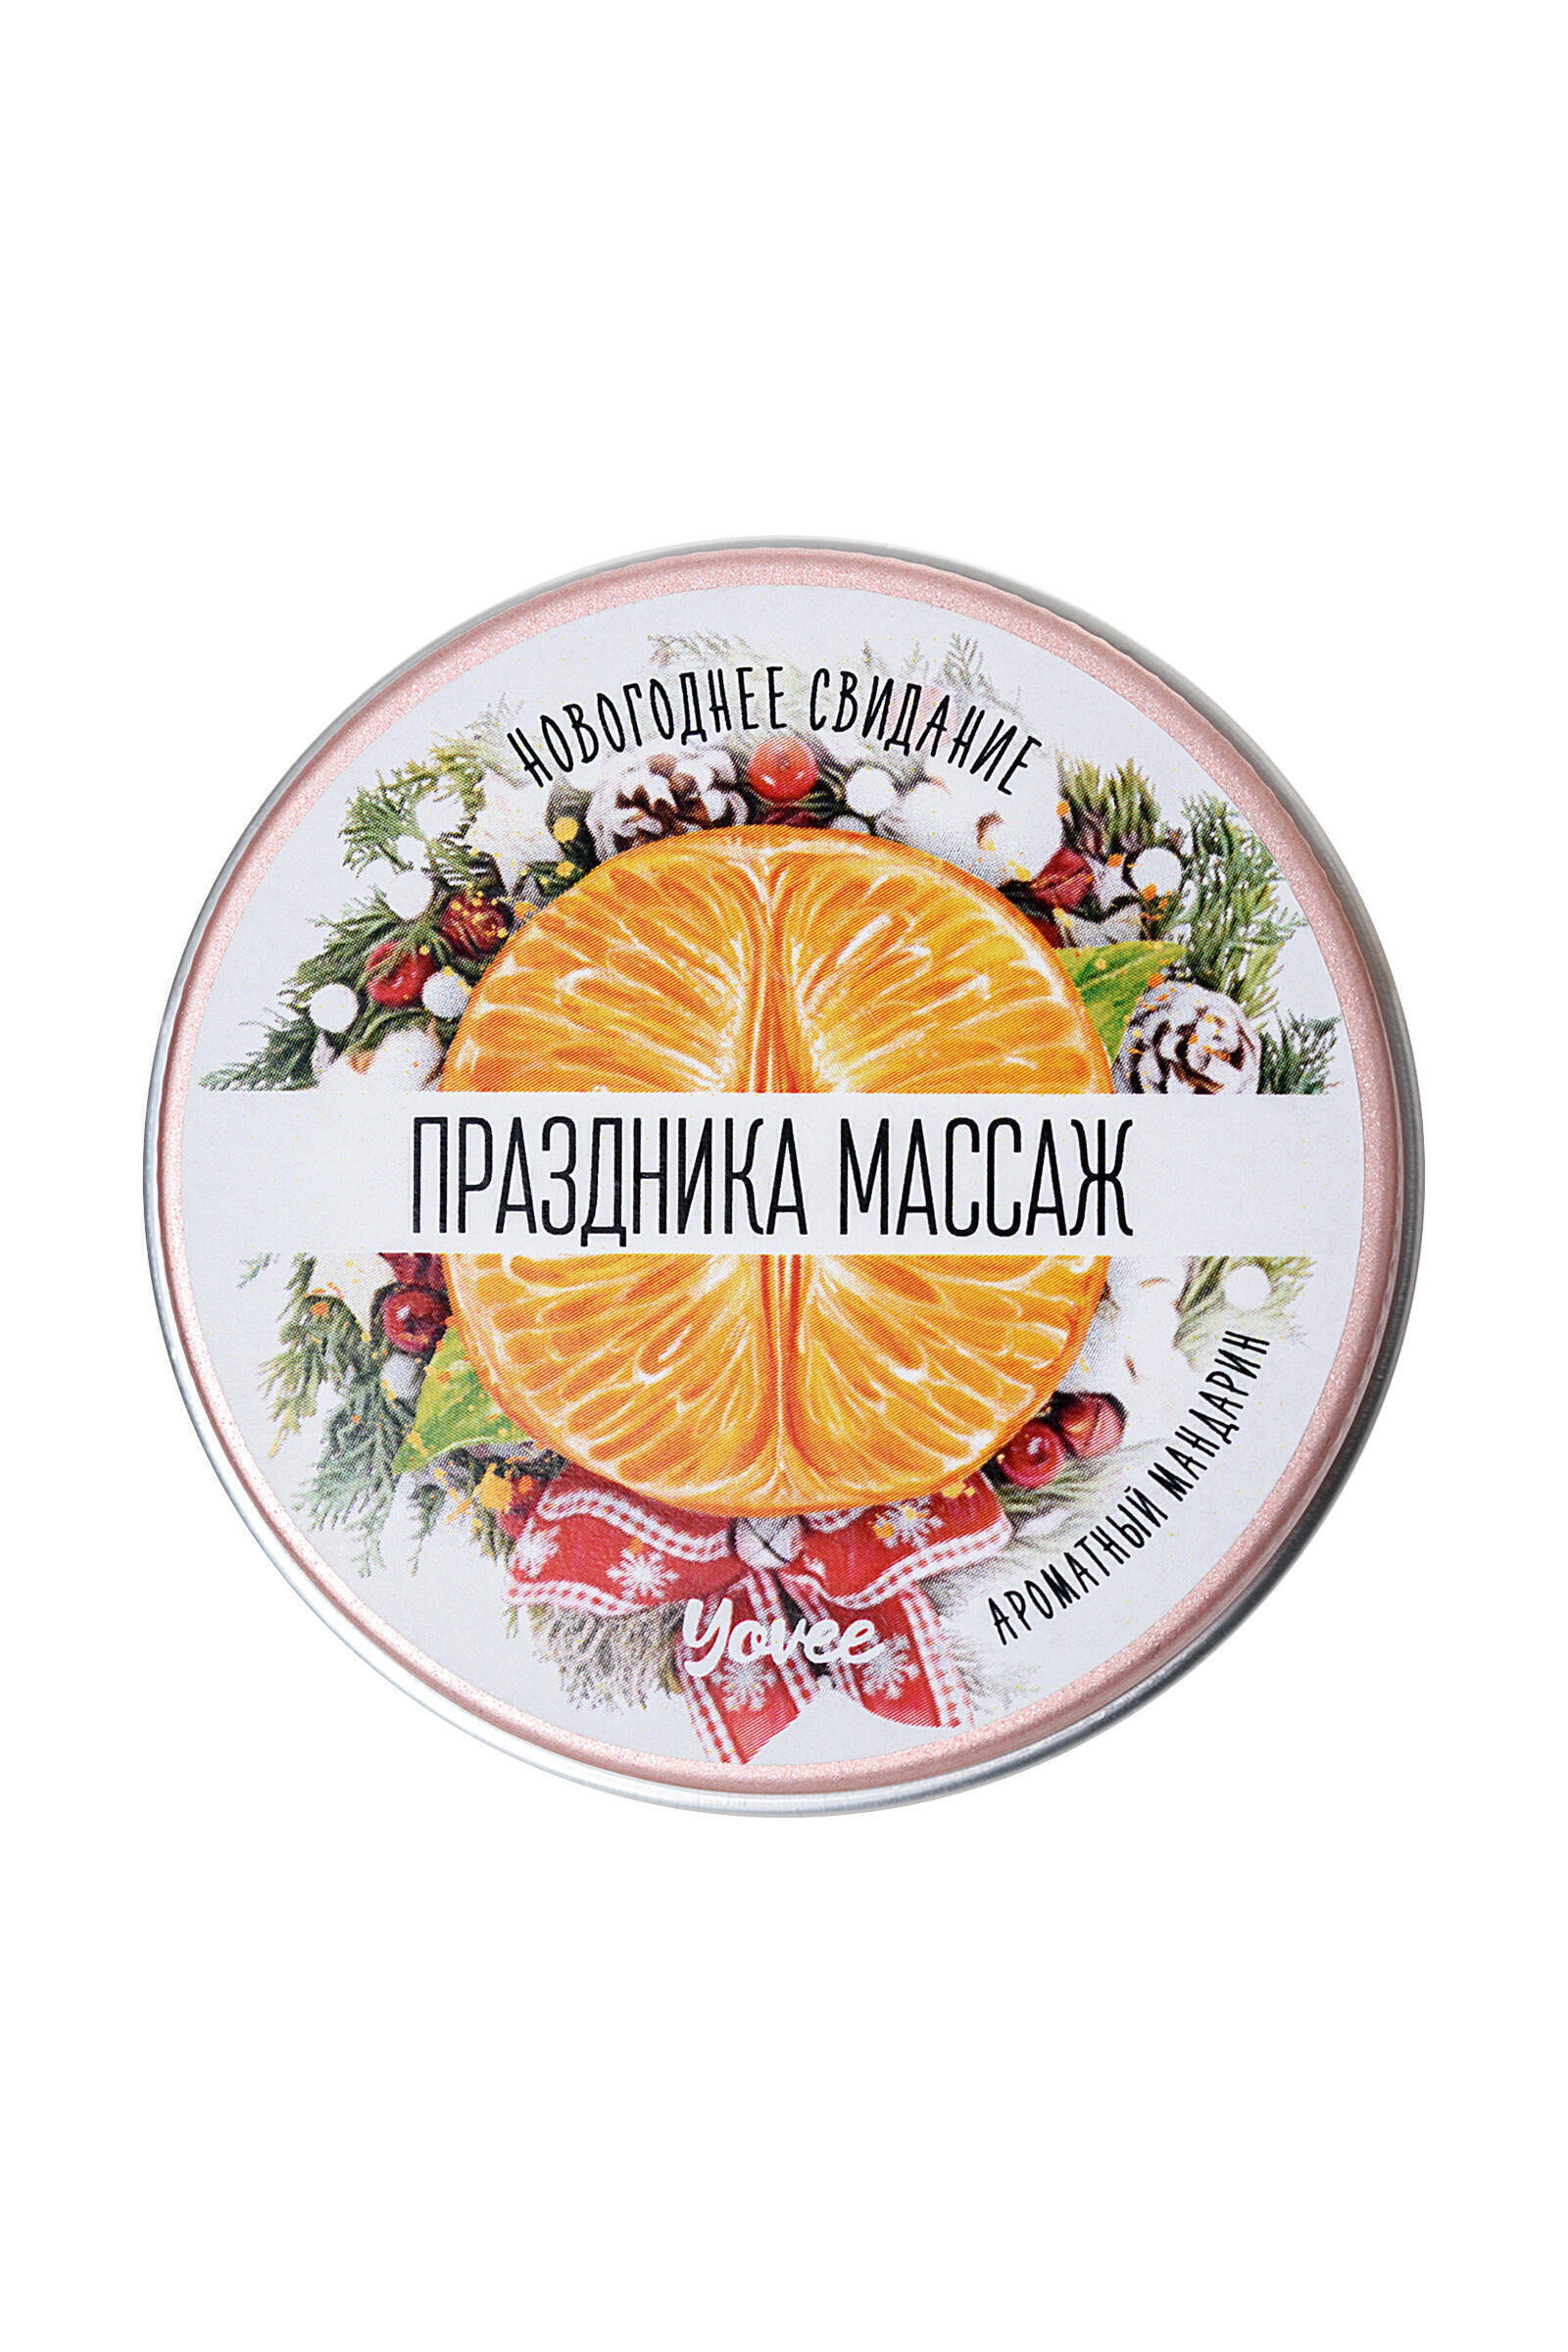 Массажная свеча Yovee by Toyfa Праздника массаж ароматный мандарин, 30 г